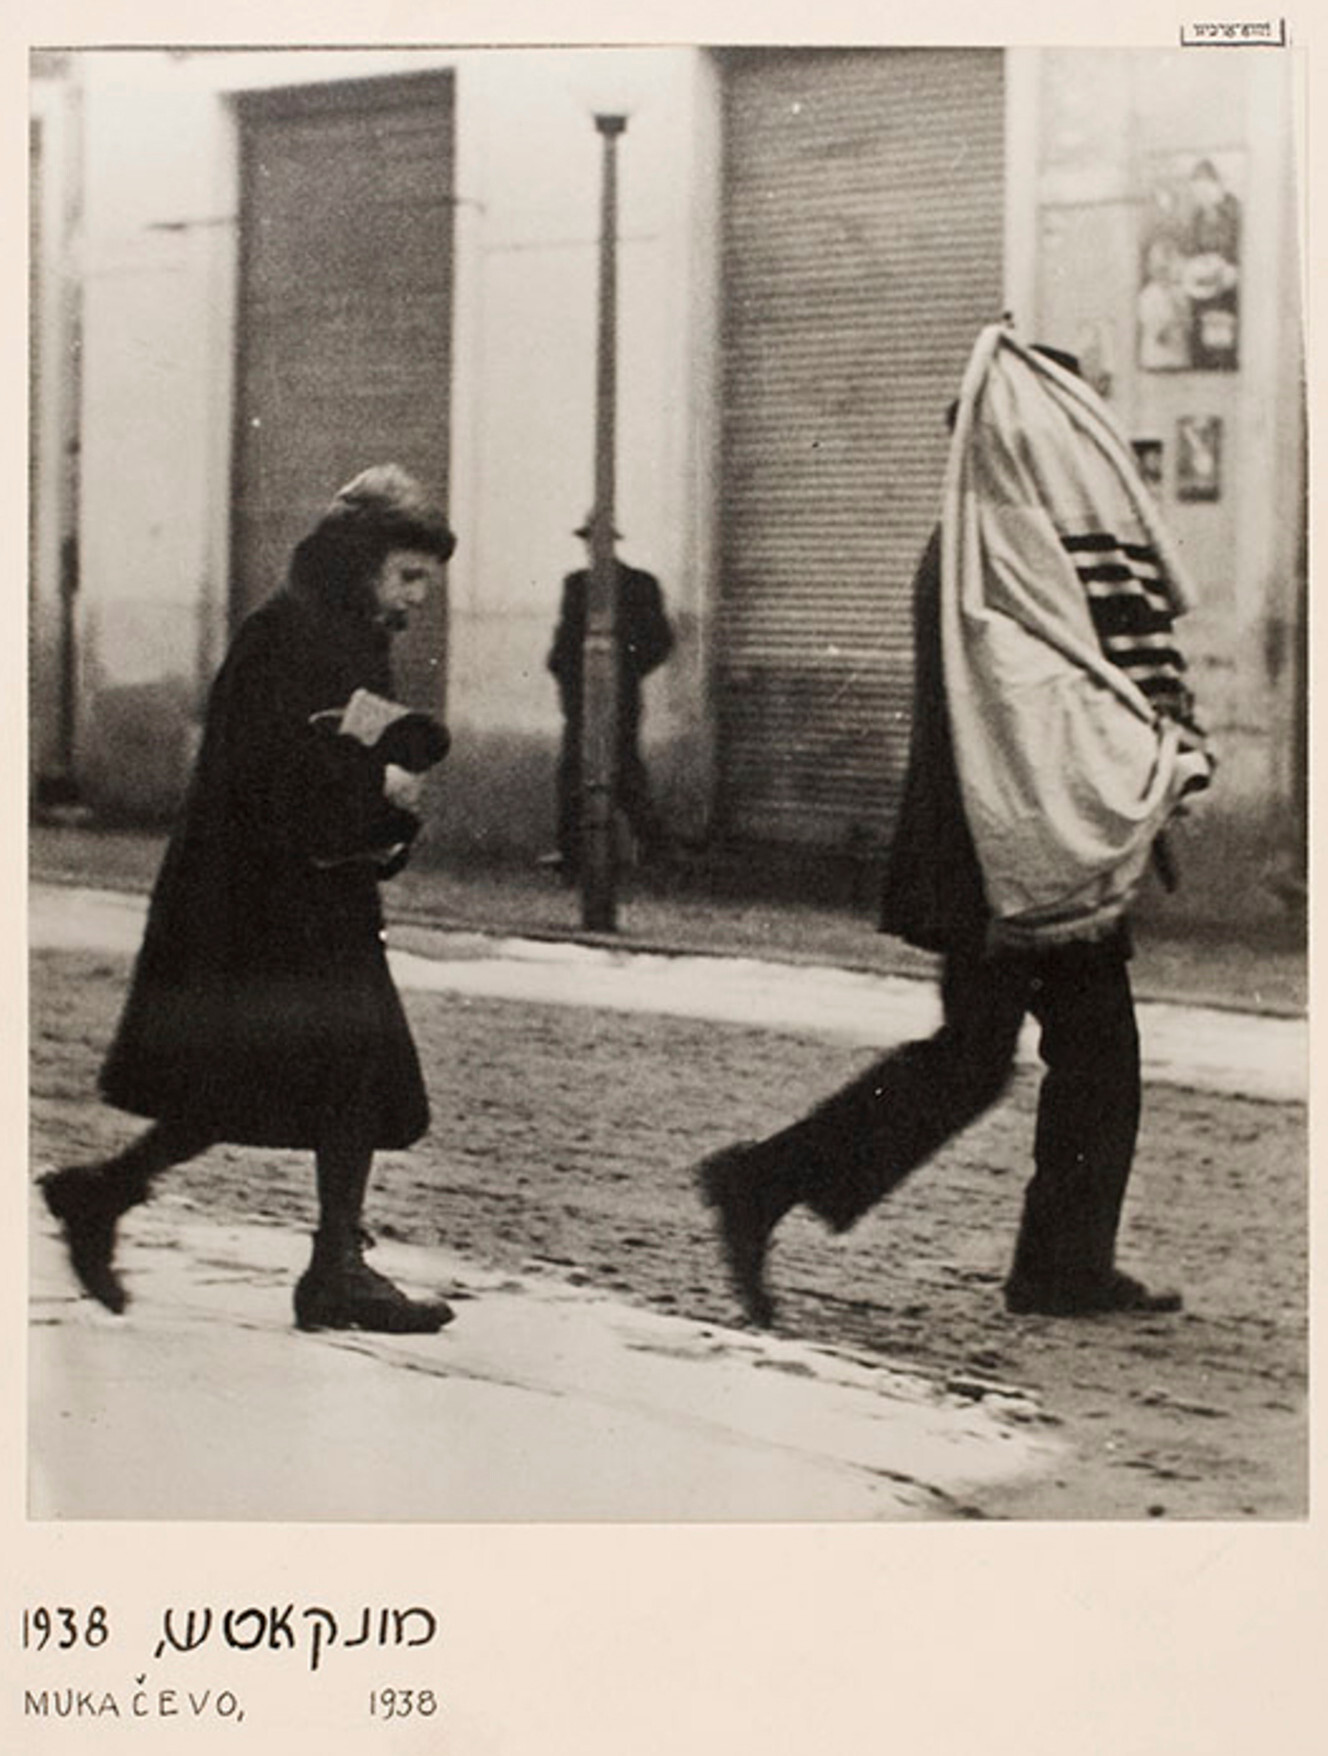 Еврейский траур, Мукачево, ок. 1935-38 г. Фотограф Роман Вишняк